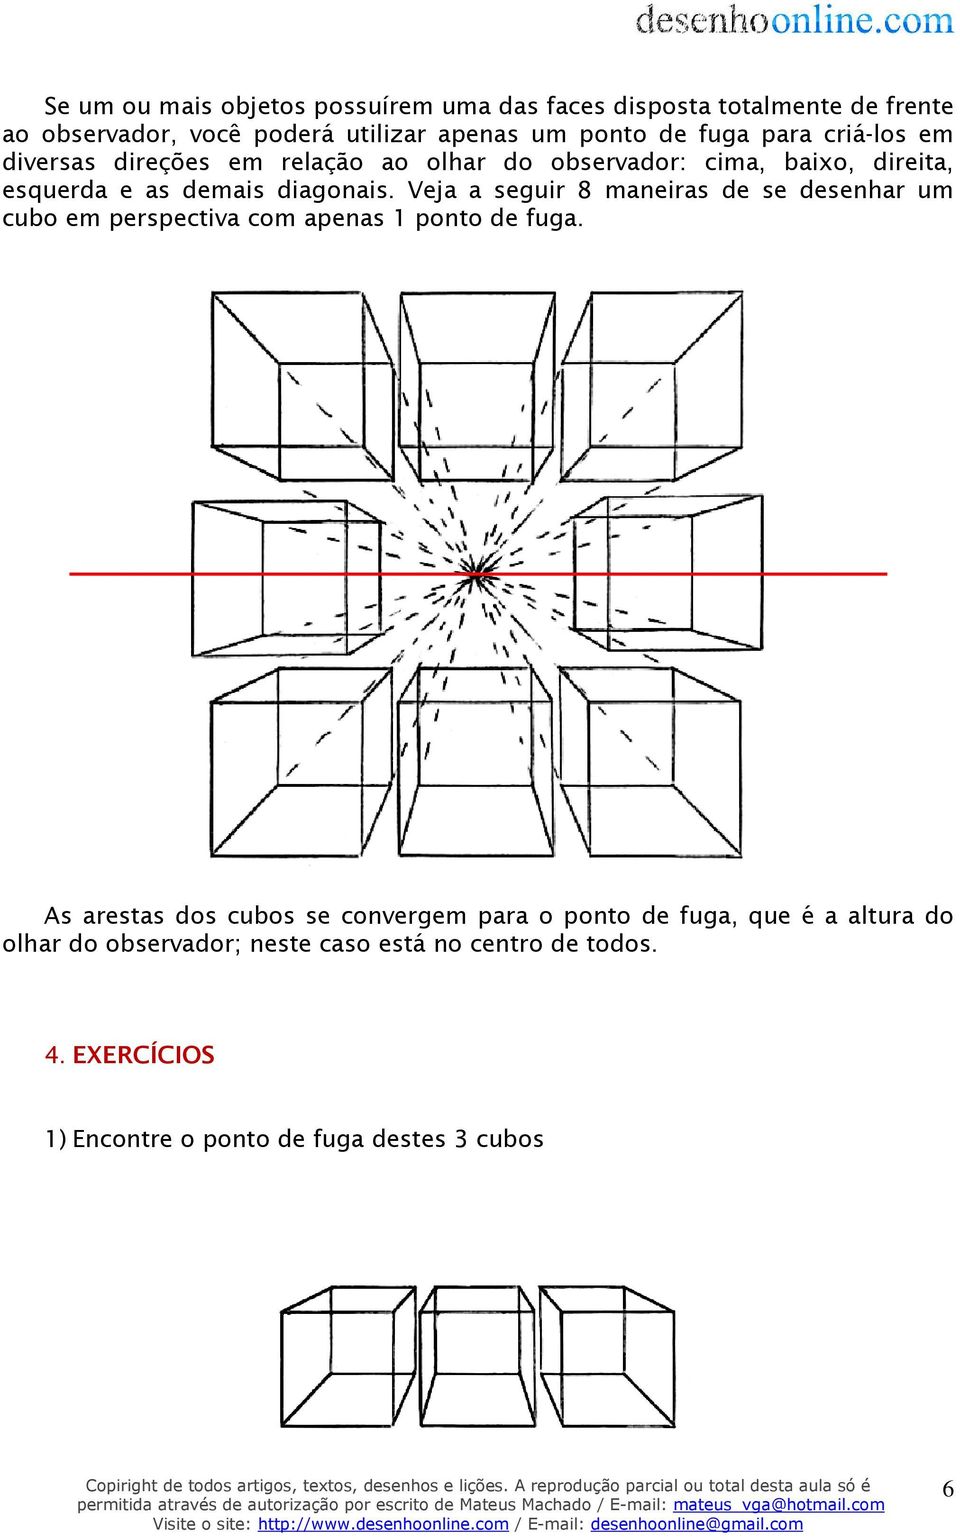 Veja a seguir 8 maneiras de se desenhar um cubo em perspectiva com apenas 1 ponto de fuga.